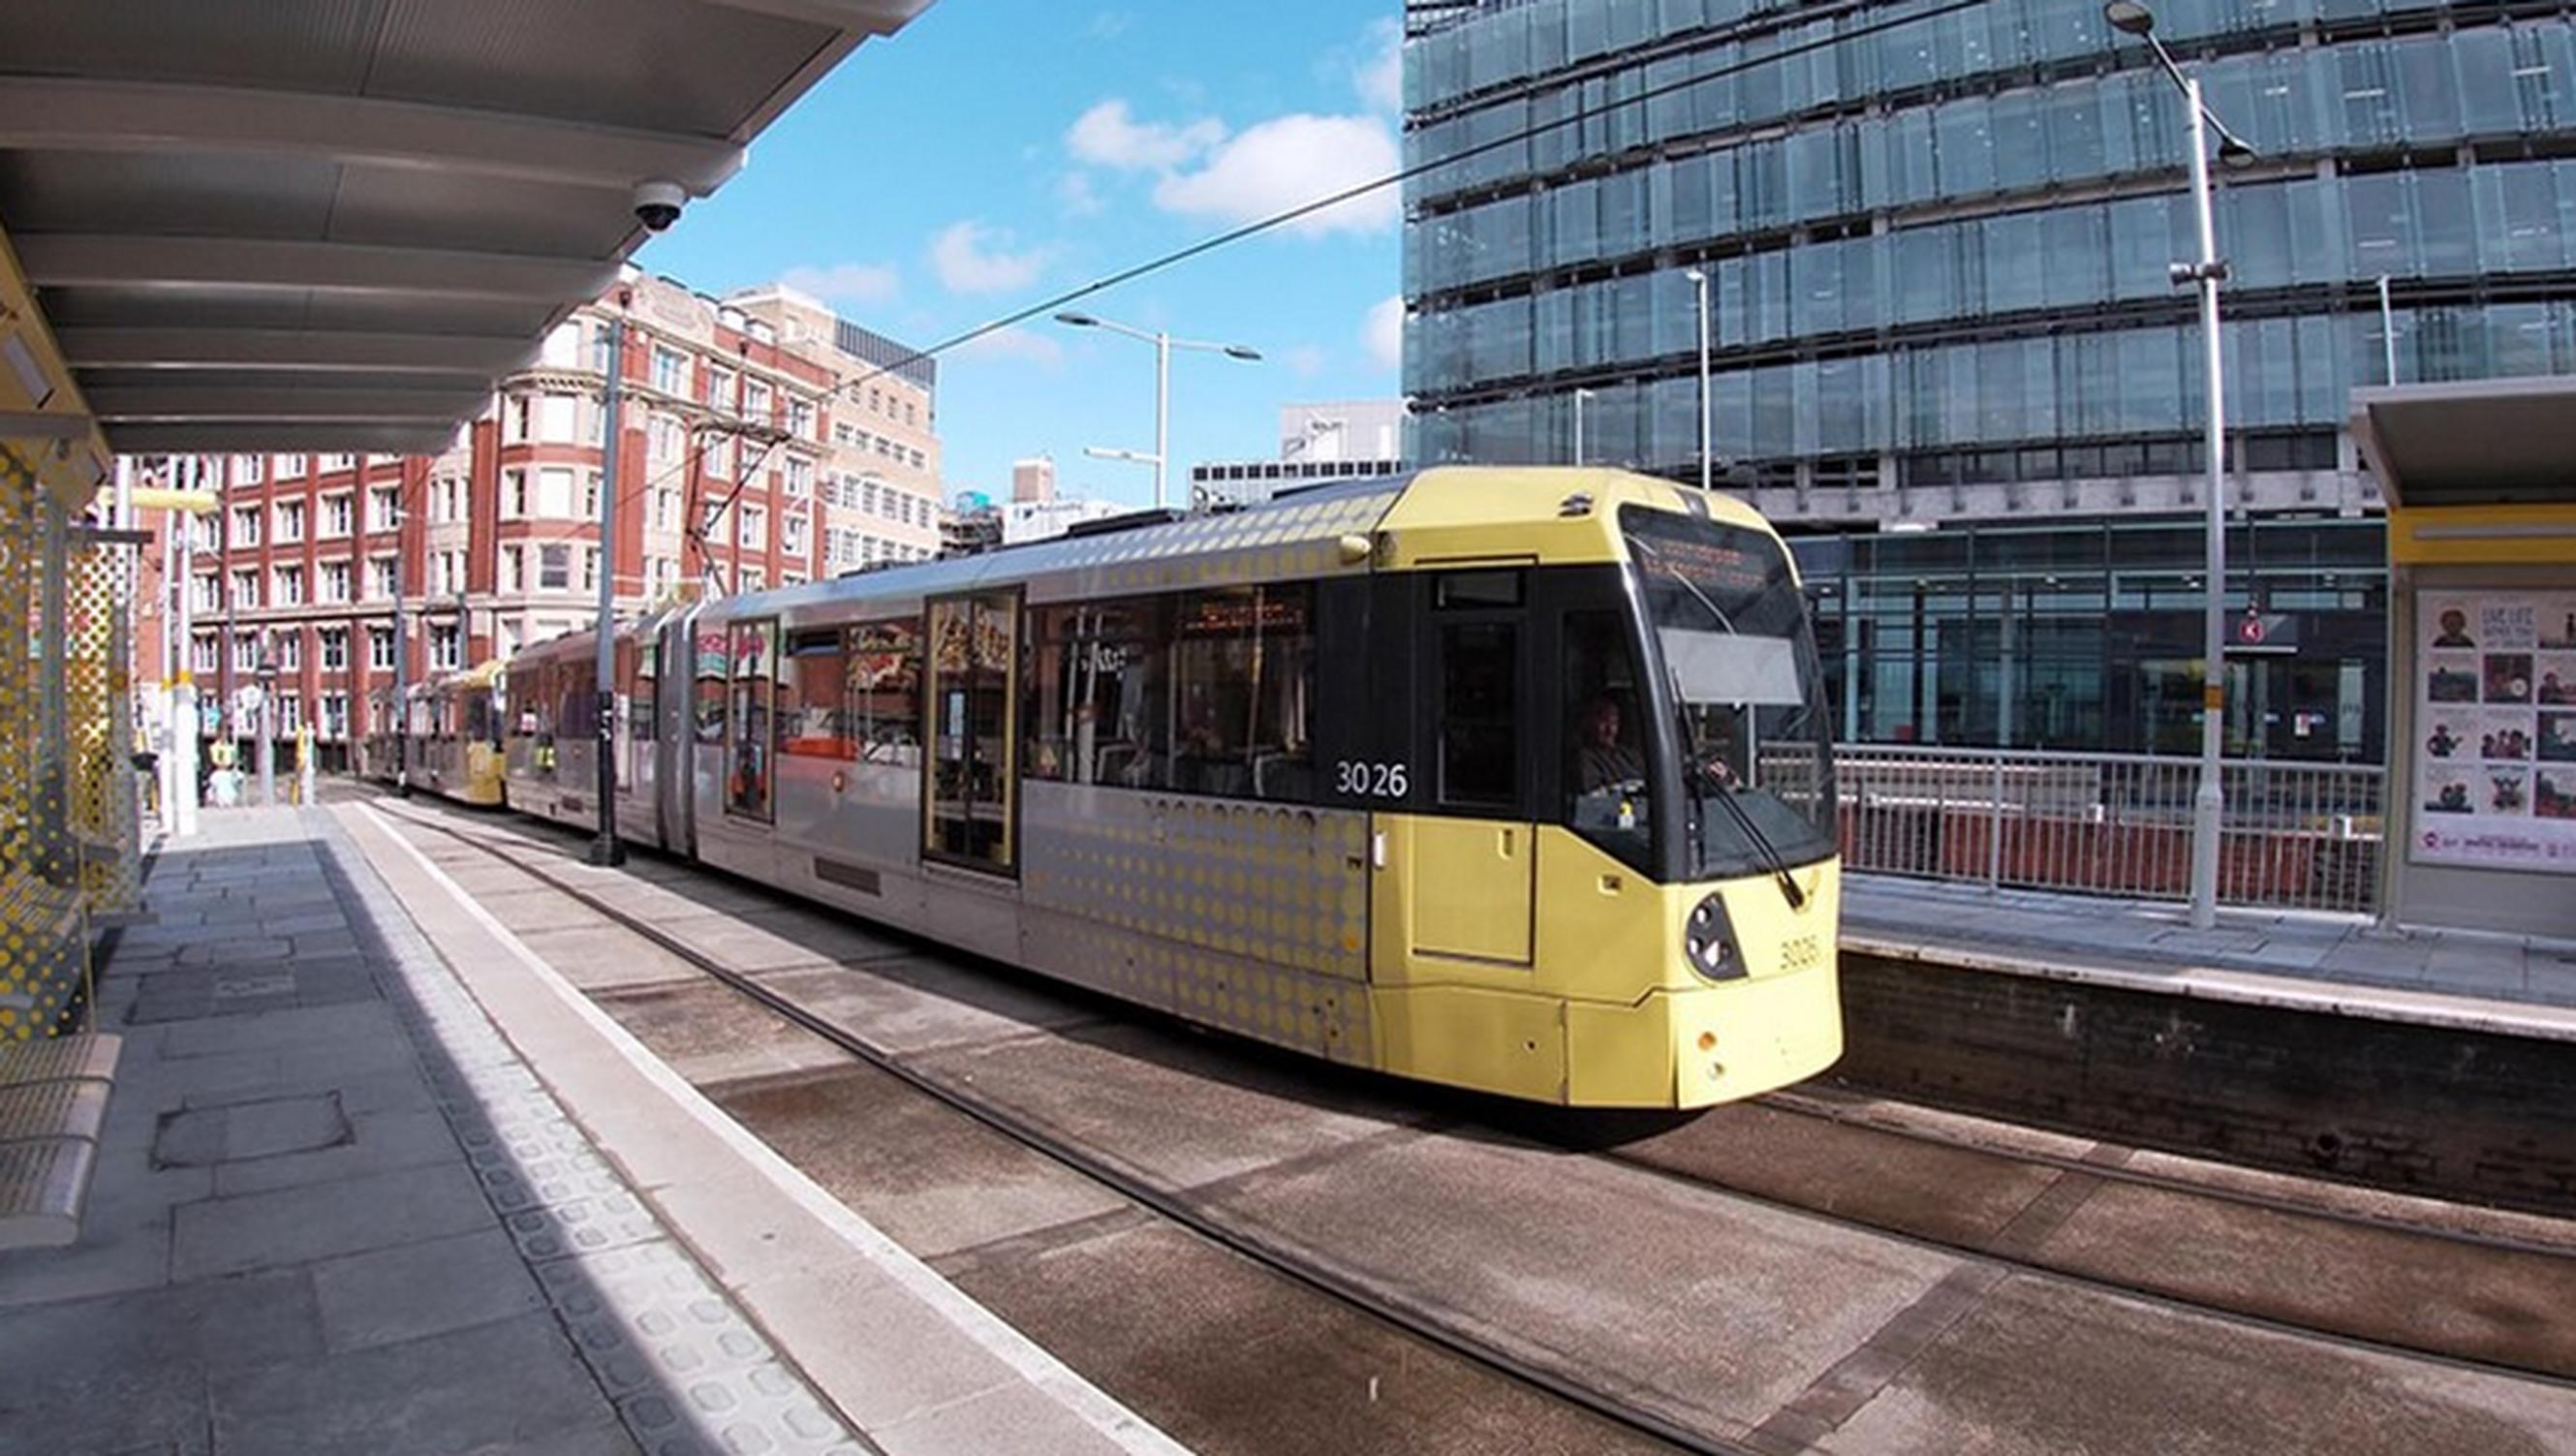 Manchester Metrolink will receiving £44m